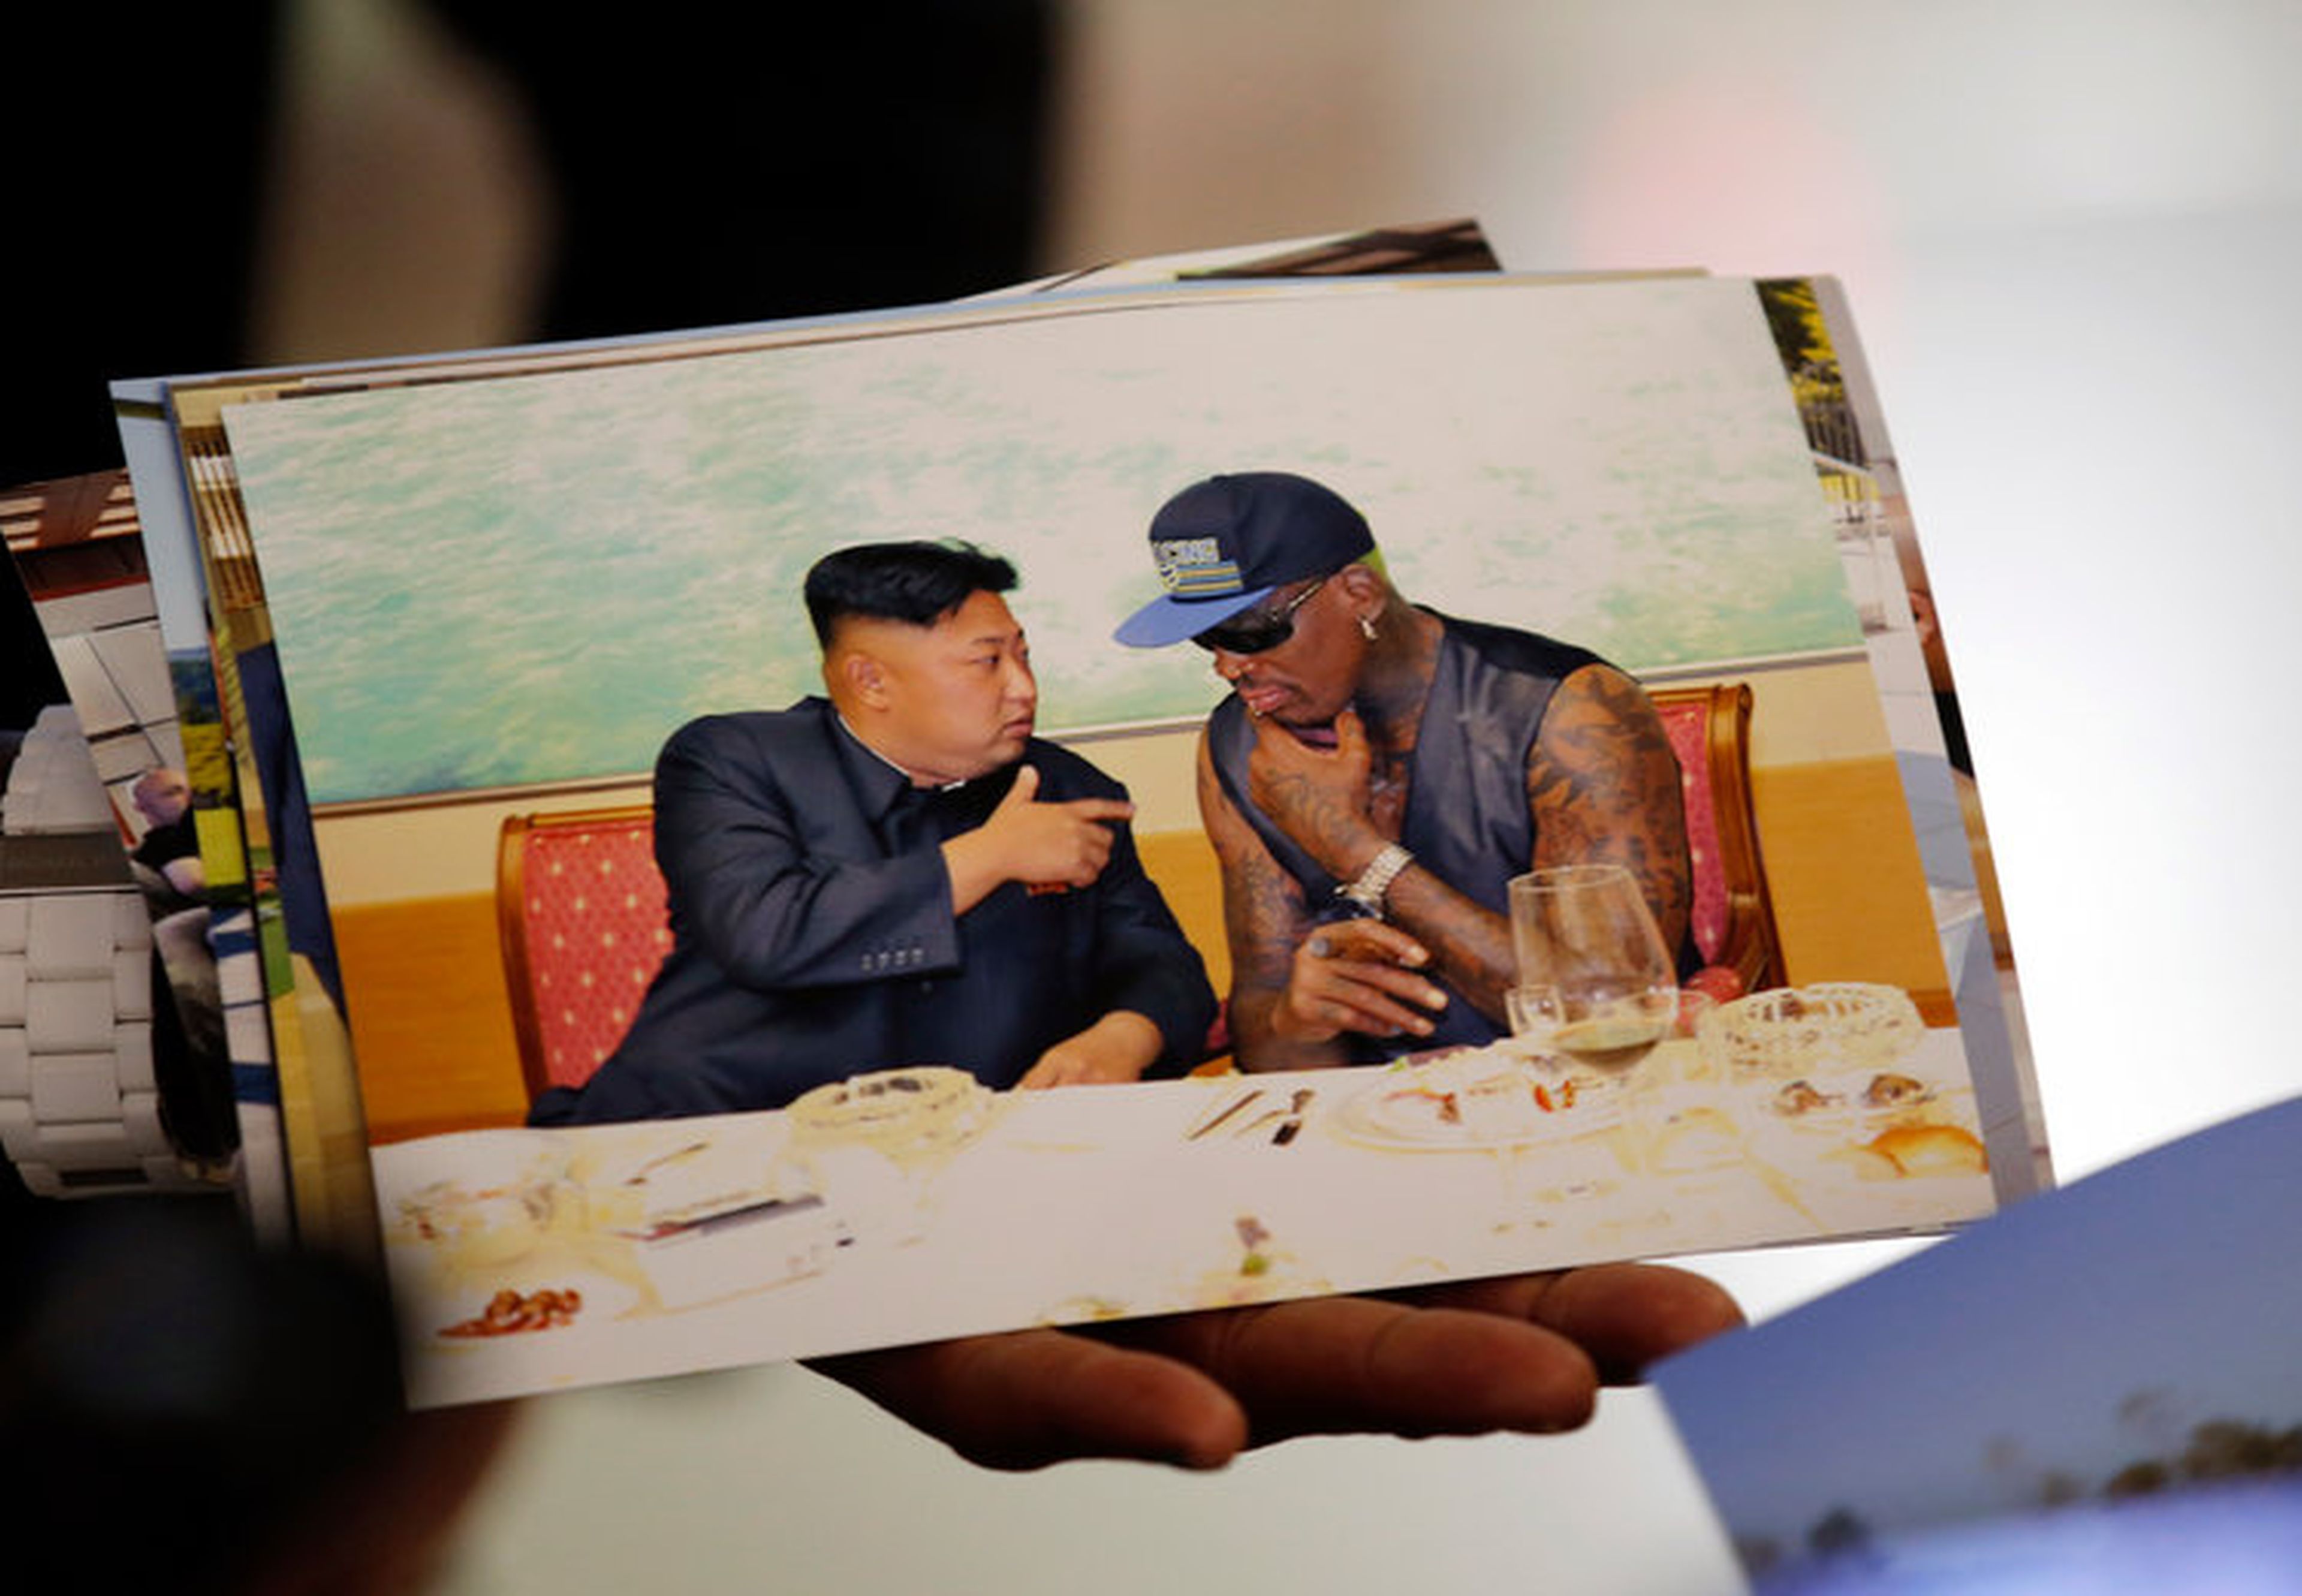 El exjugador de la NBA Dennis Rodman enseña una fotografía que se sacó con el líder de Corea del Norte, Kim Jong-un, a su llegada al Aeropuerto de Beijing el 7 de septiembre de 2013.